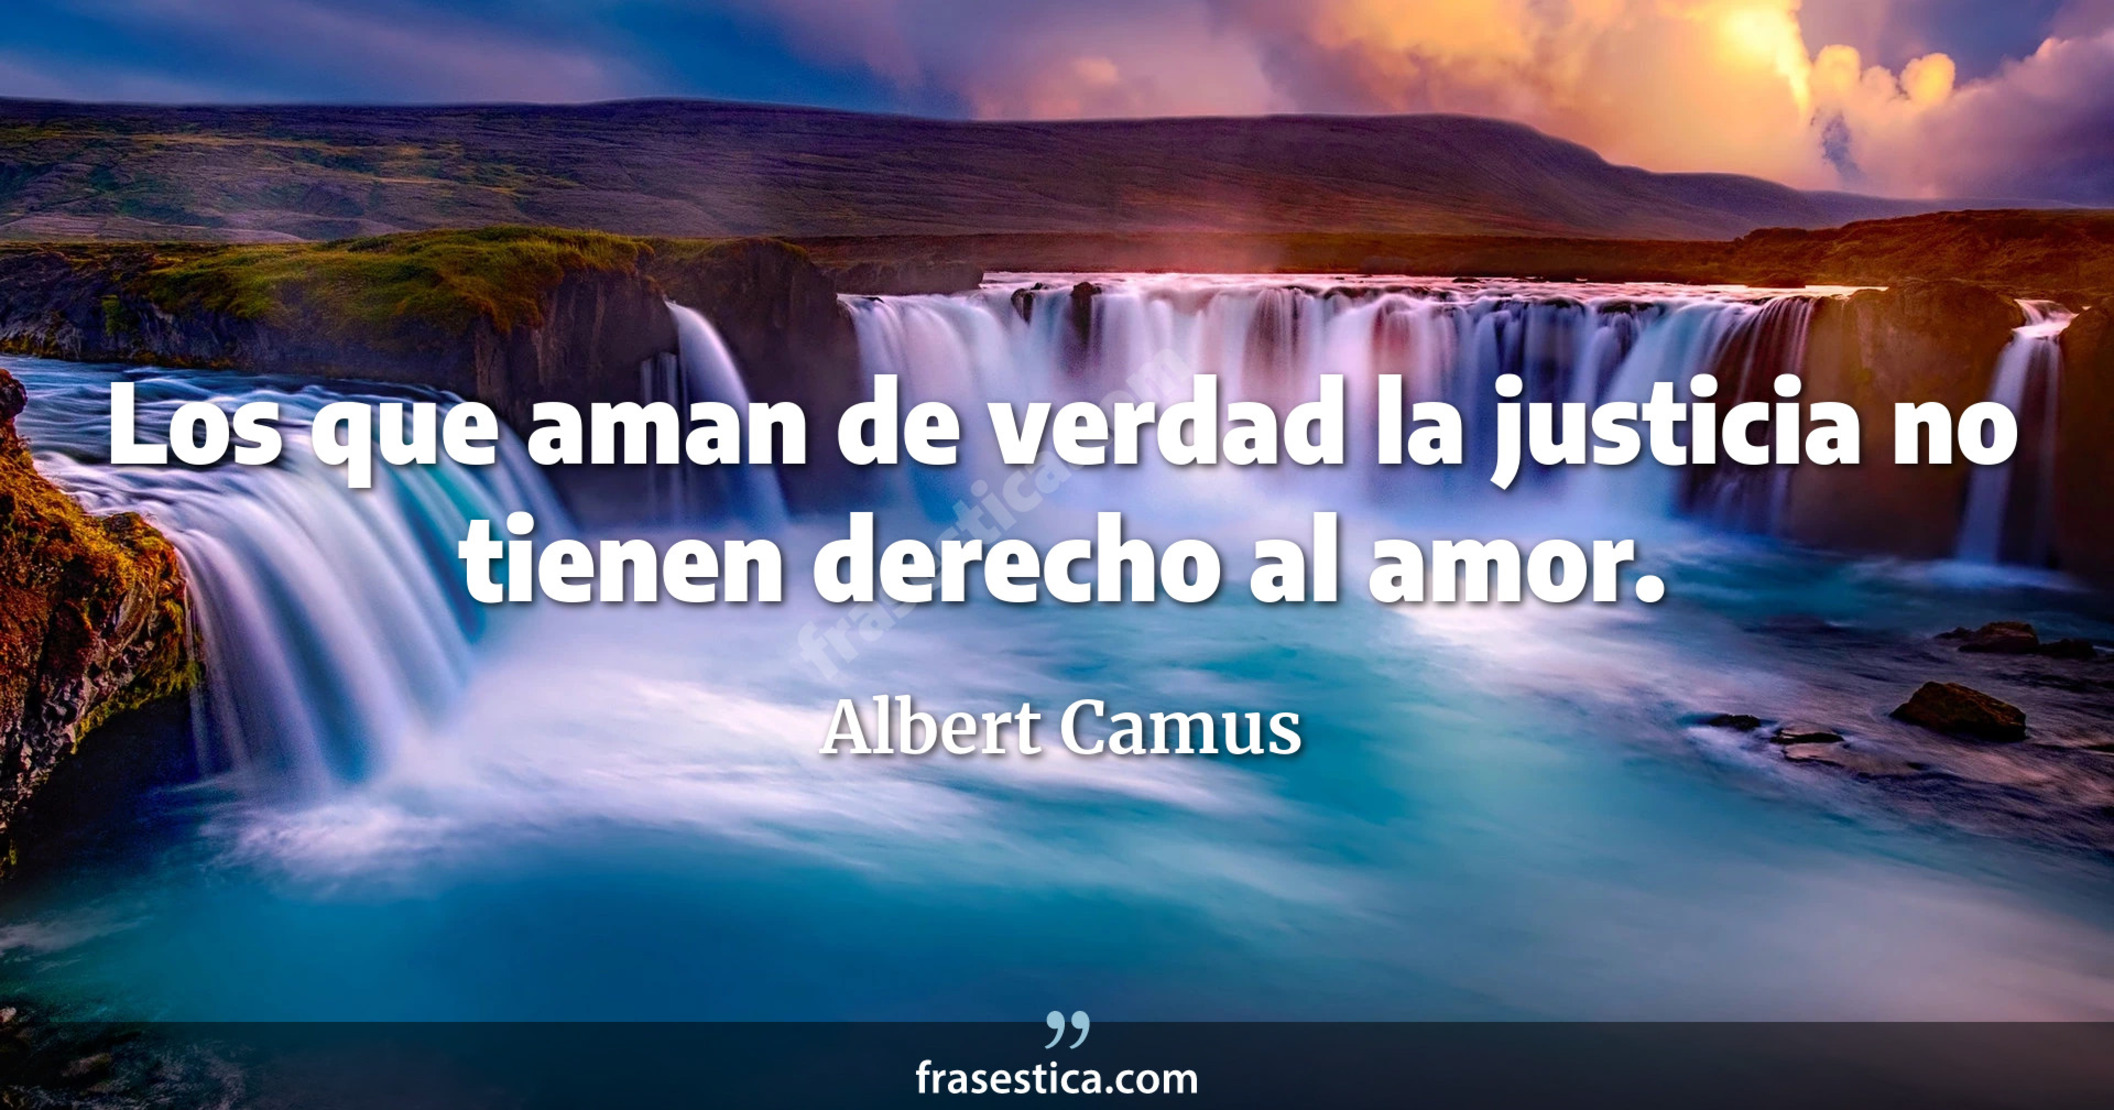 Los que aman de verdad la justicia no tienen derecho al amor. - Albert Camus